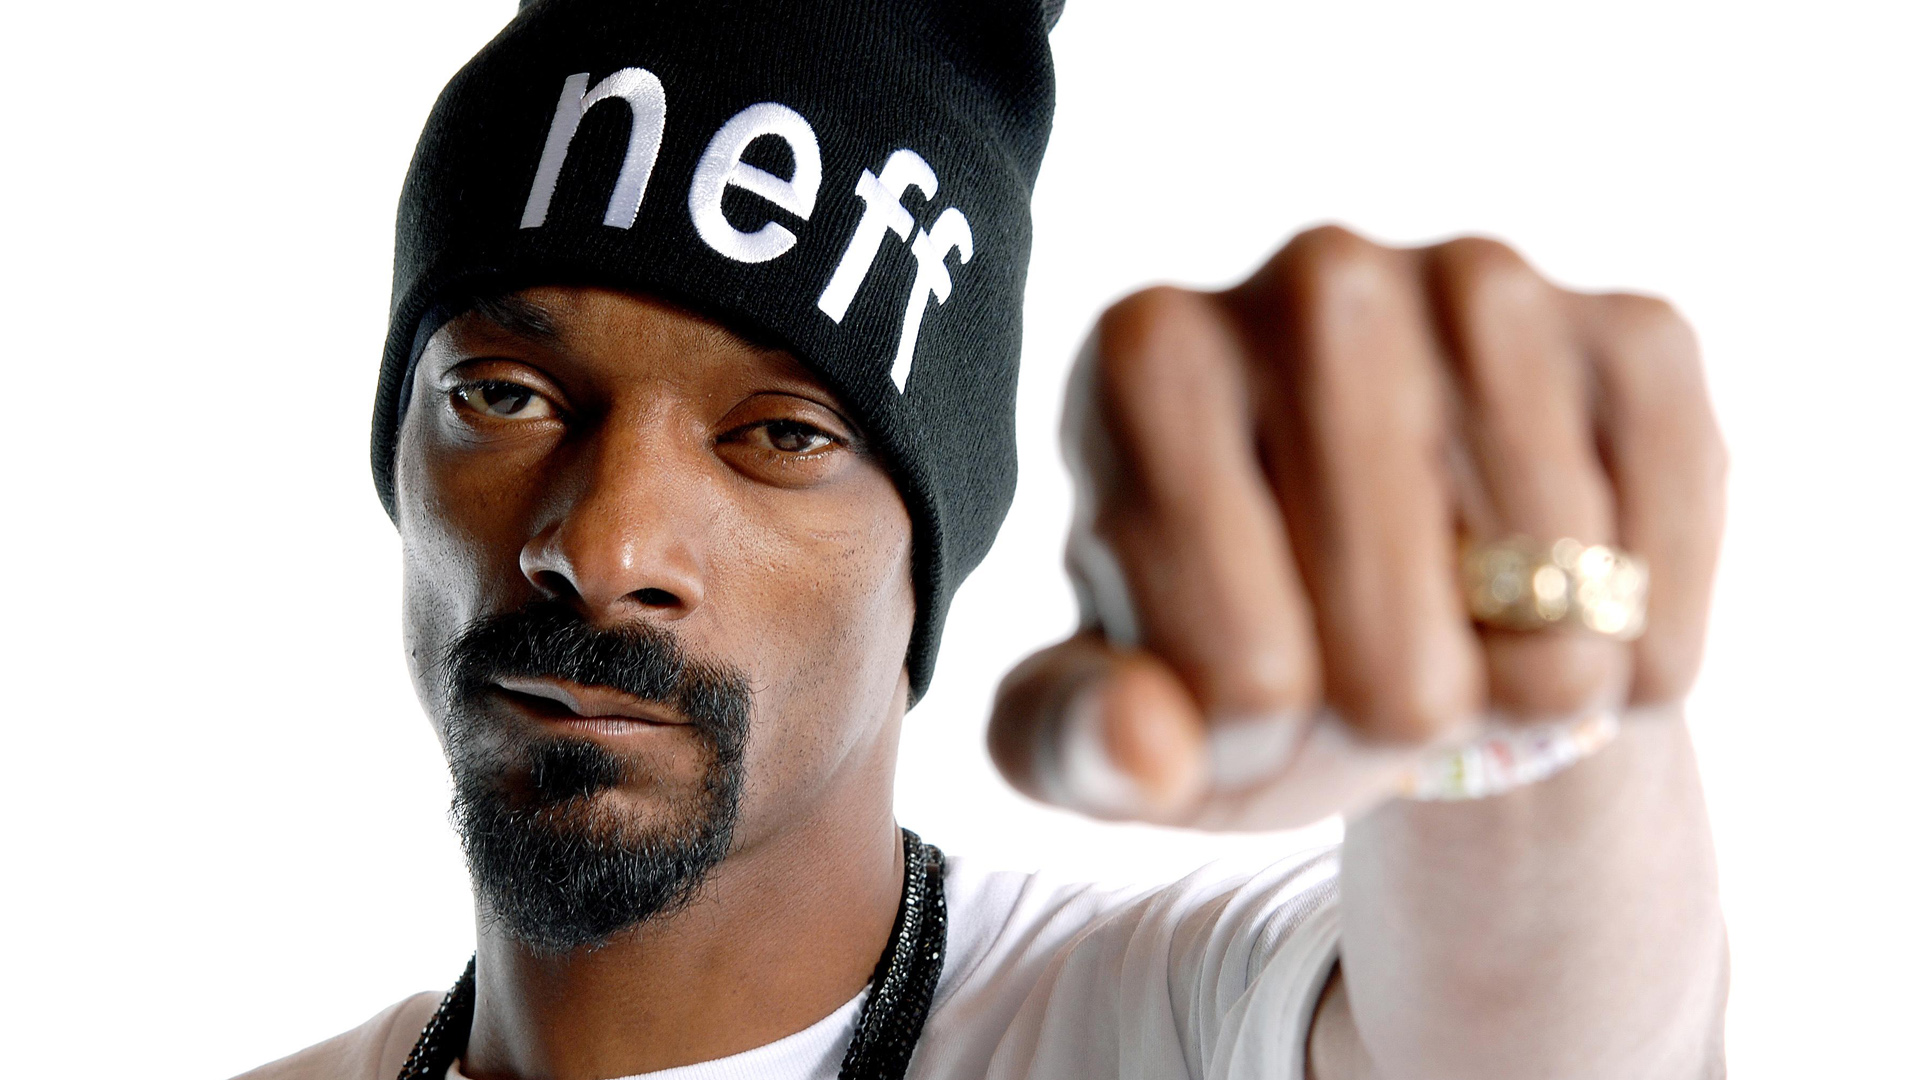 Snoop Dogg concert in Detroit